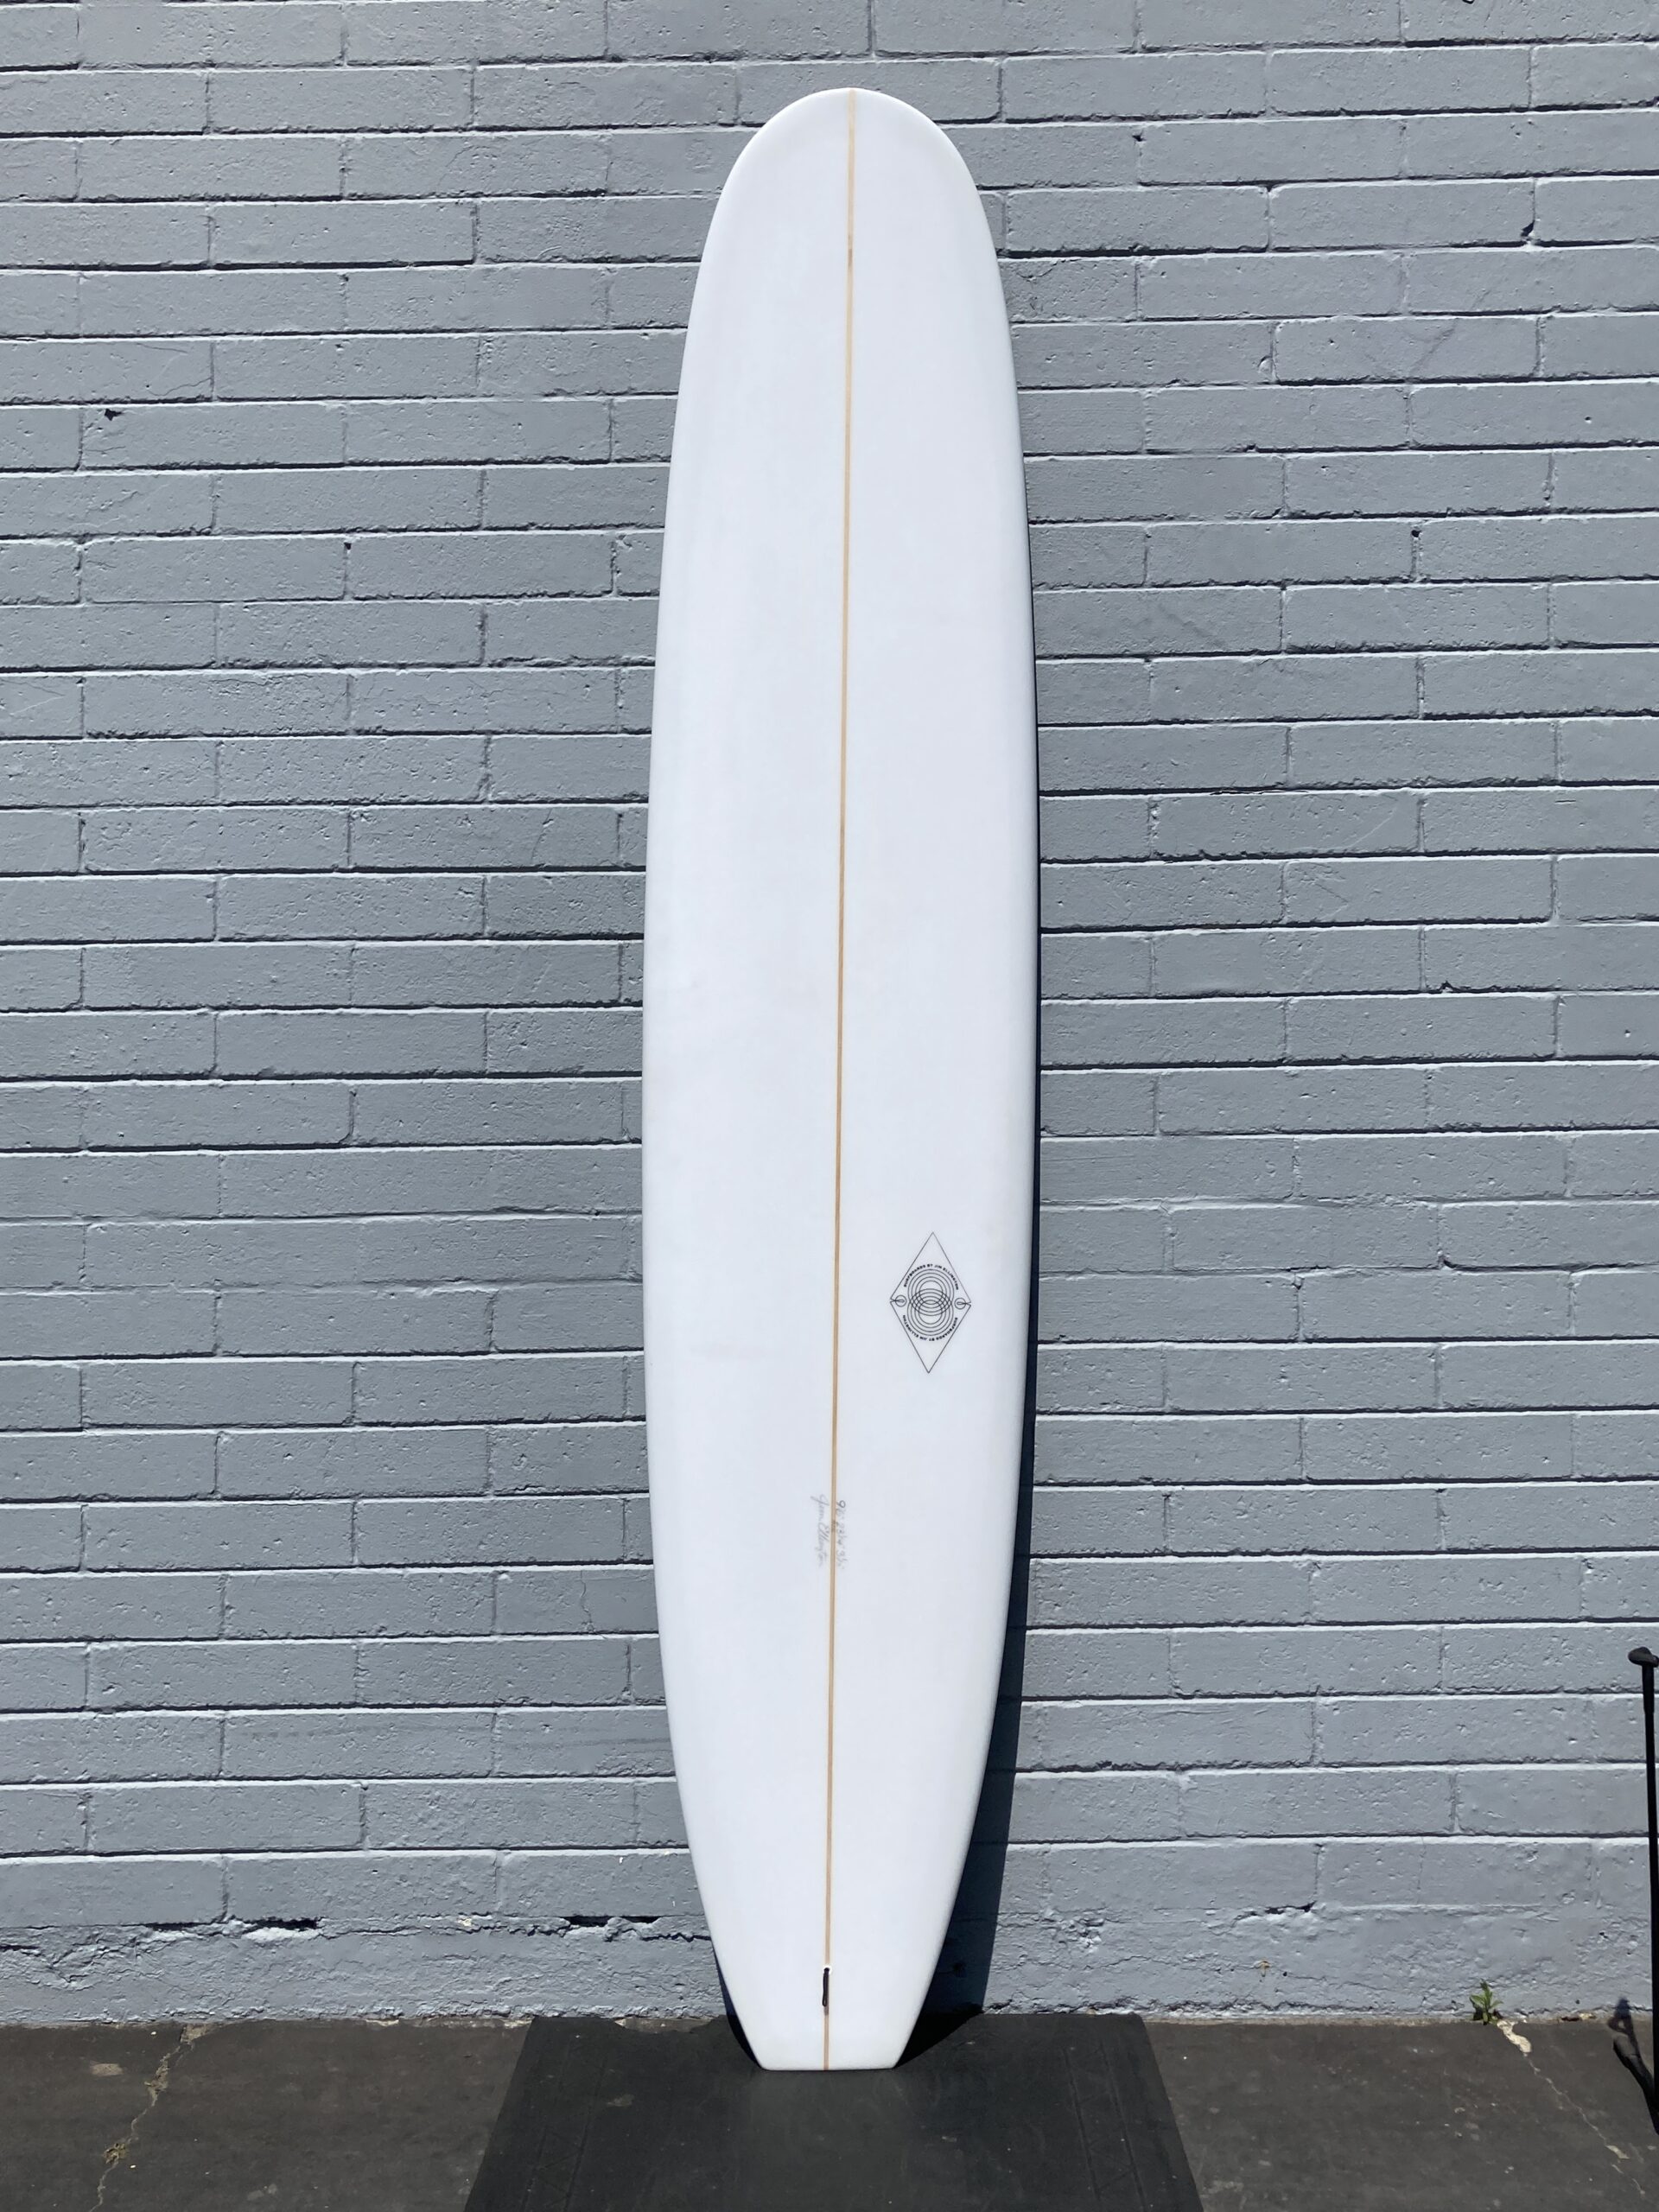 JE 9'6" longboard front